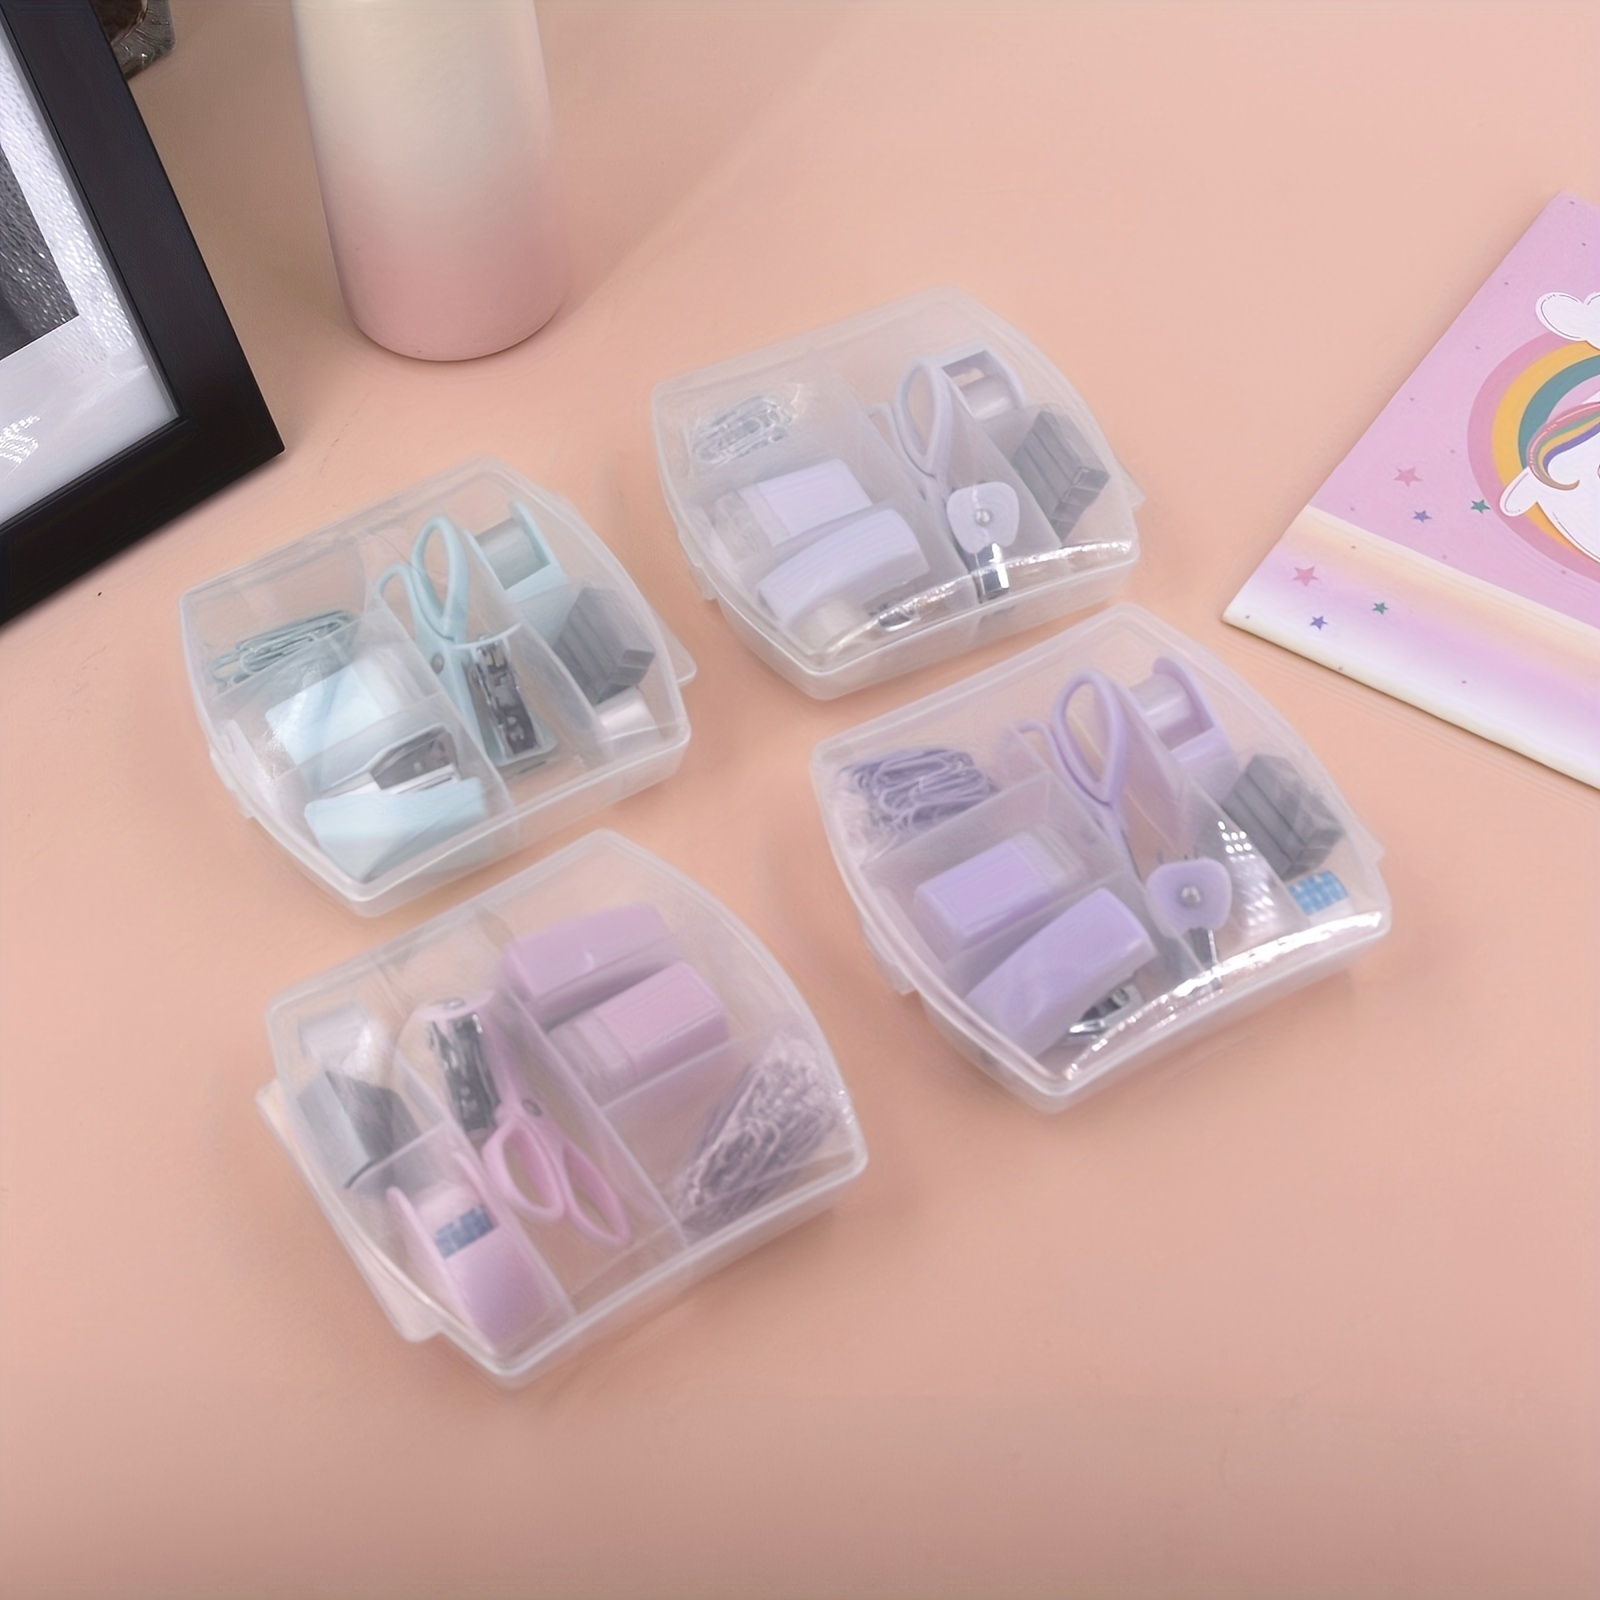 Mini Office Supply Kit - Mint - 4-1/8 x 4-1/4 x 1-1/4 H - Each